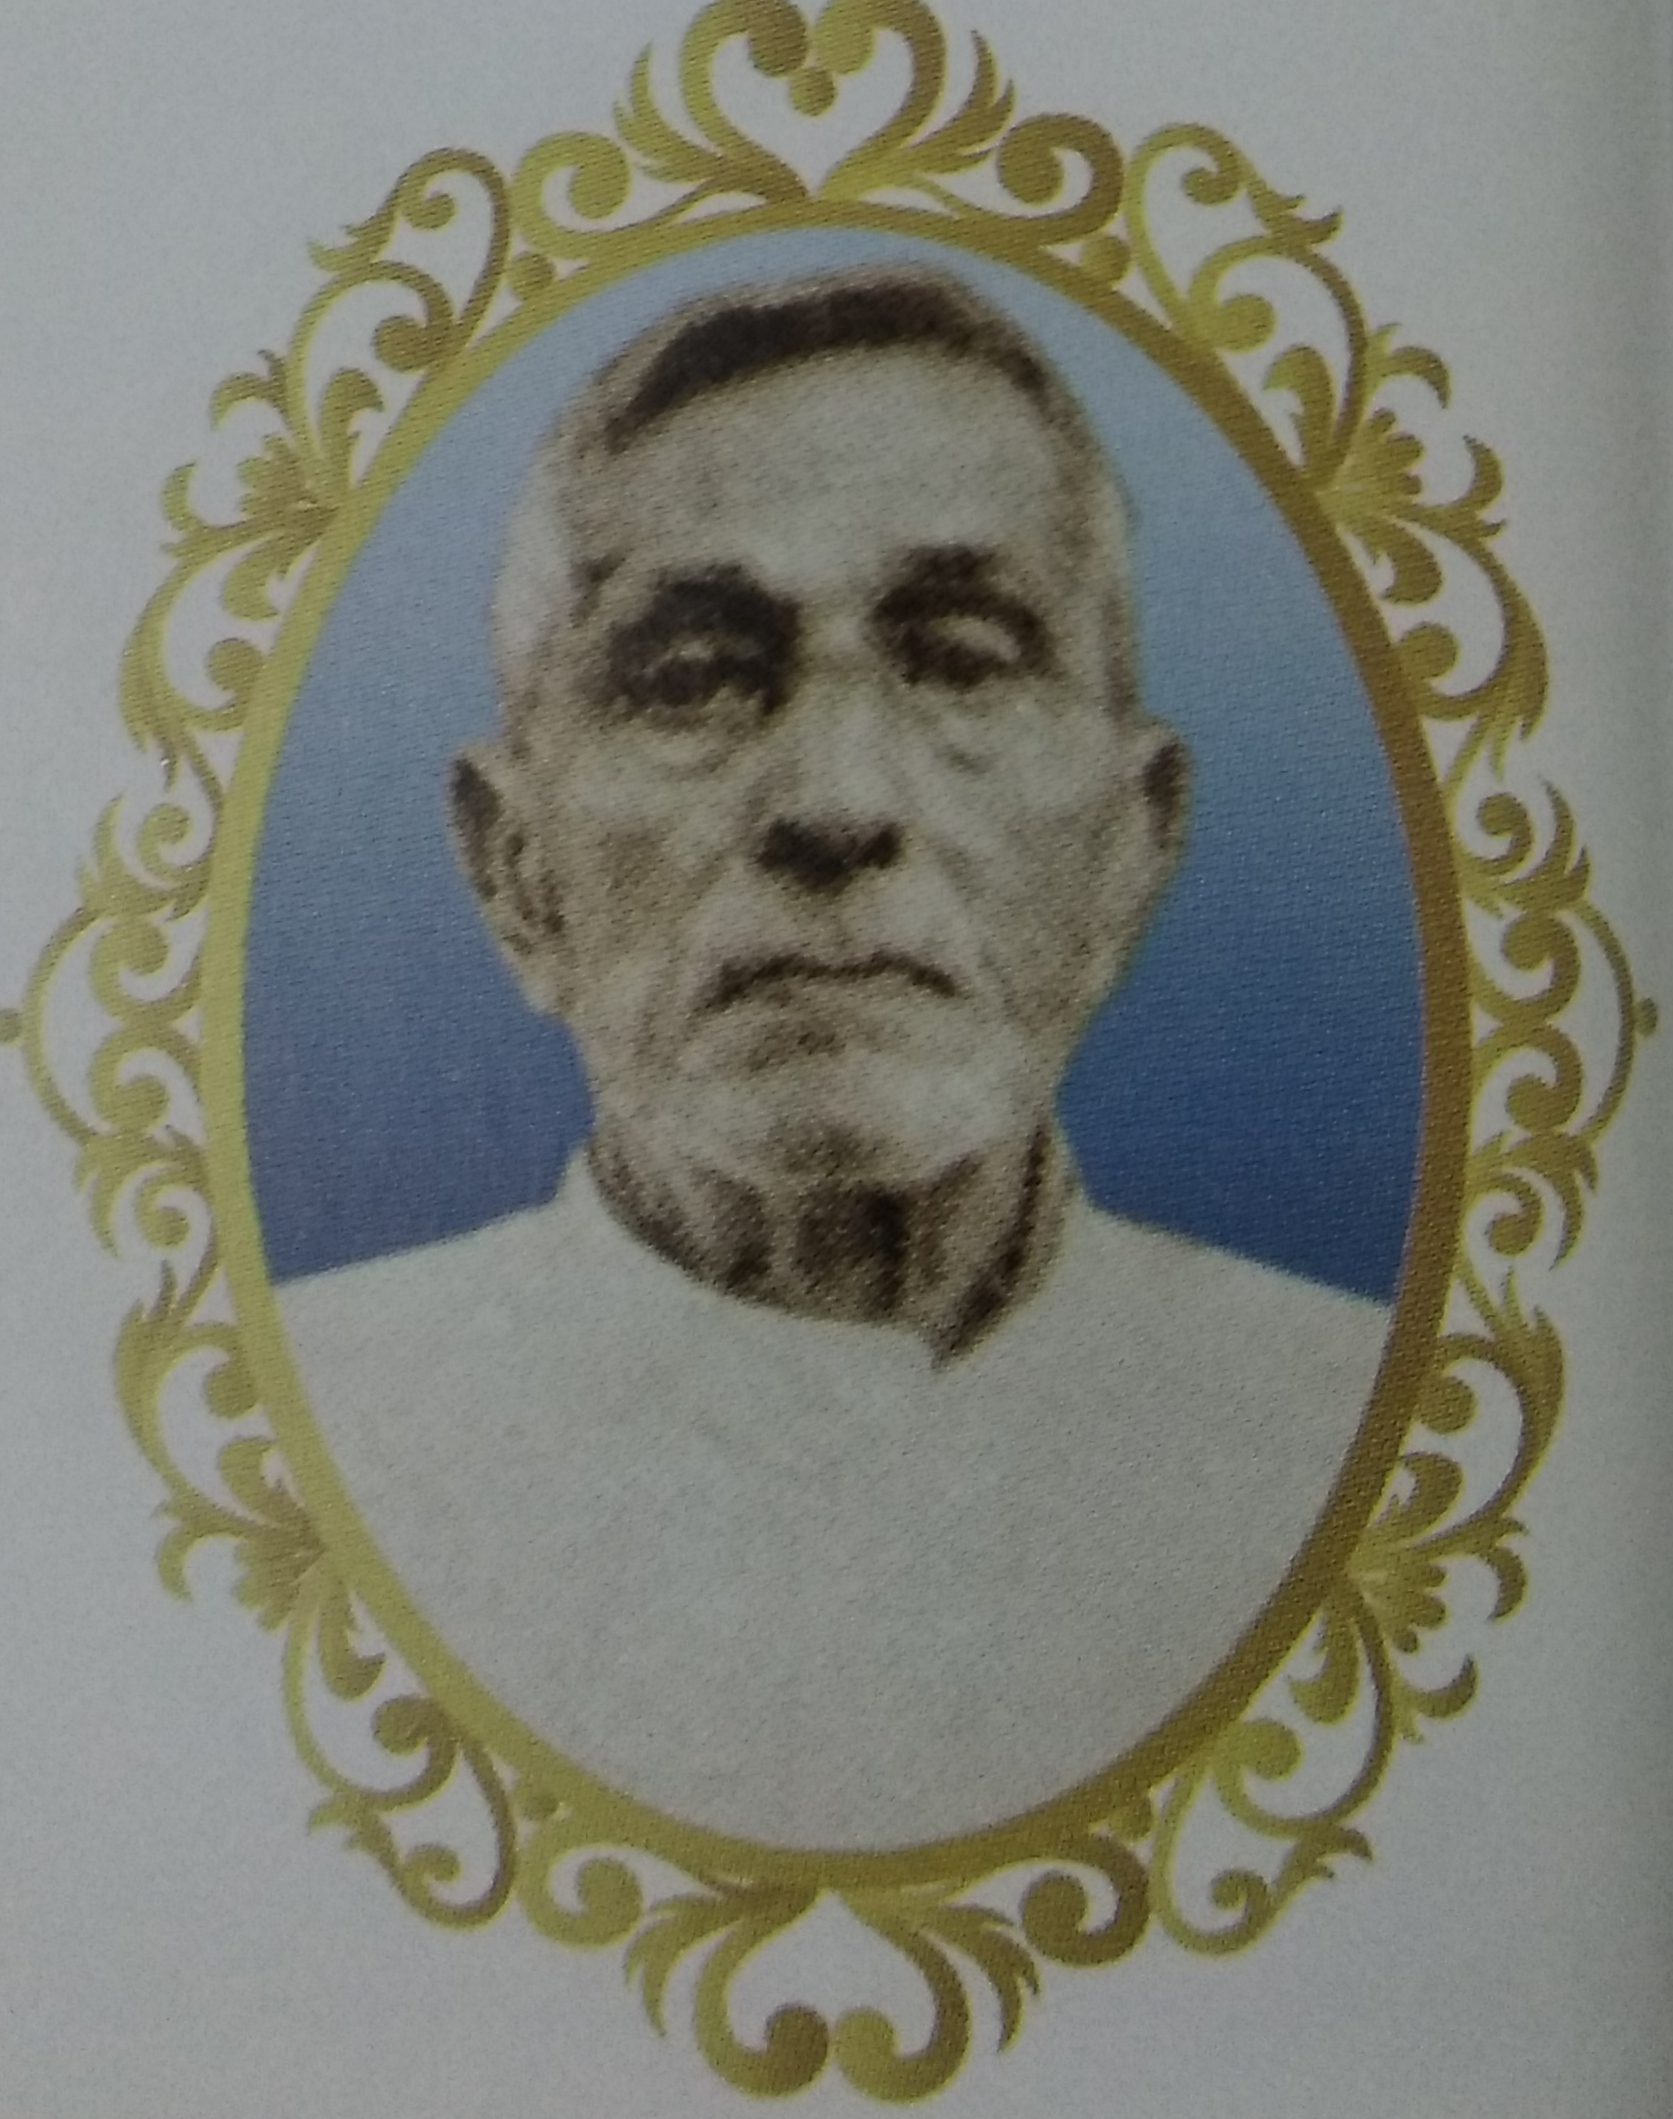 Fr. Charles D'Cunha